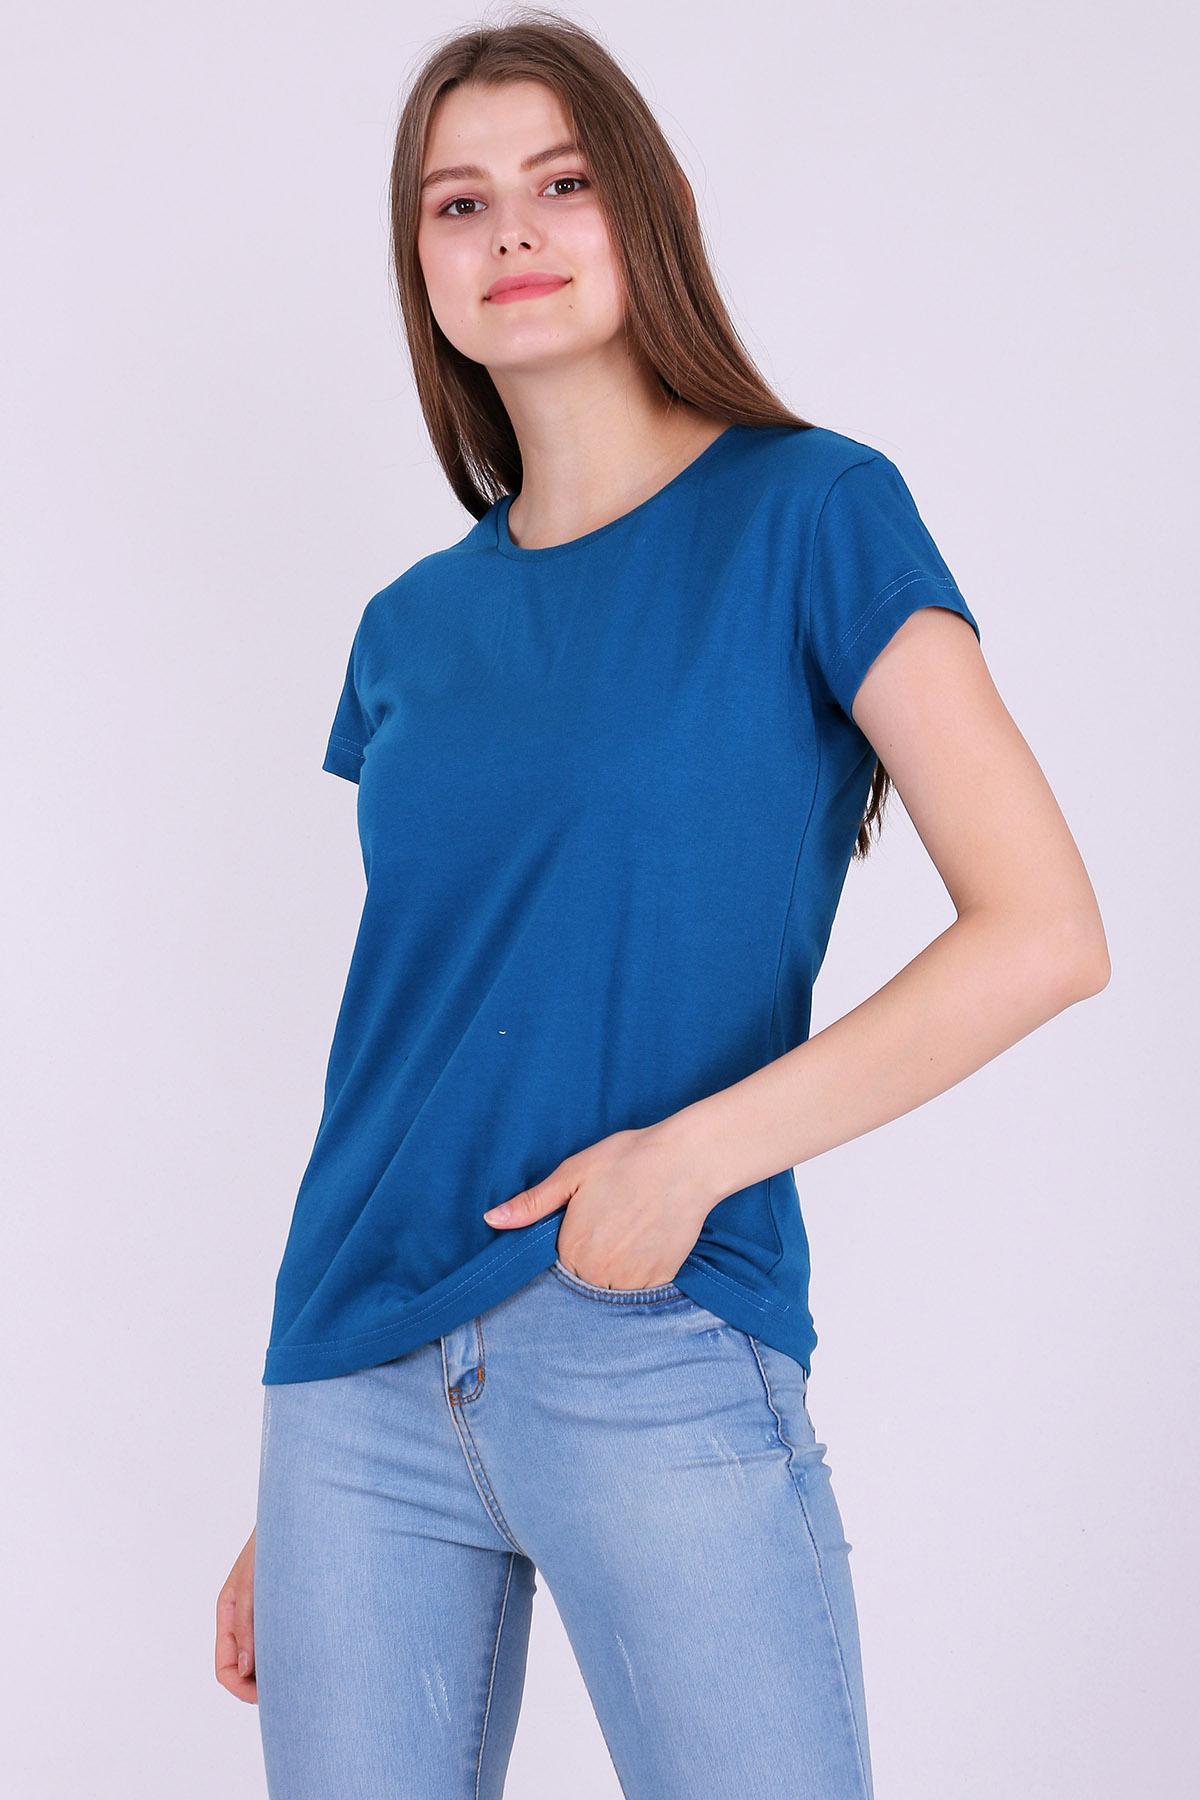 İndigo Mavi Renk %100 Pamuk Bisiklet Yaka Basic Baskısız Kadın Örme Kısa Kollu Tshirt